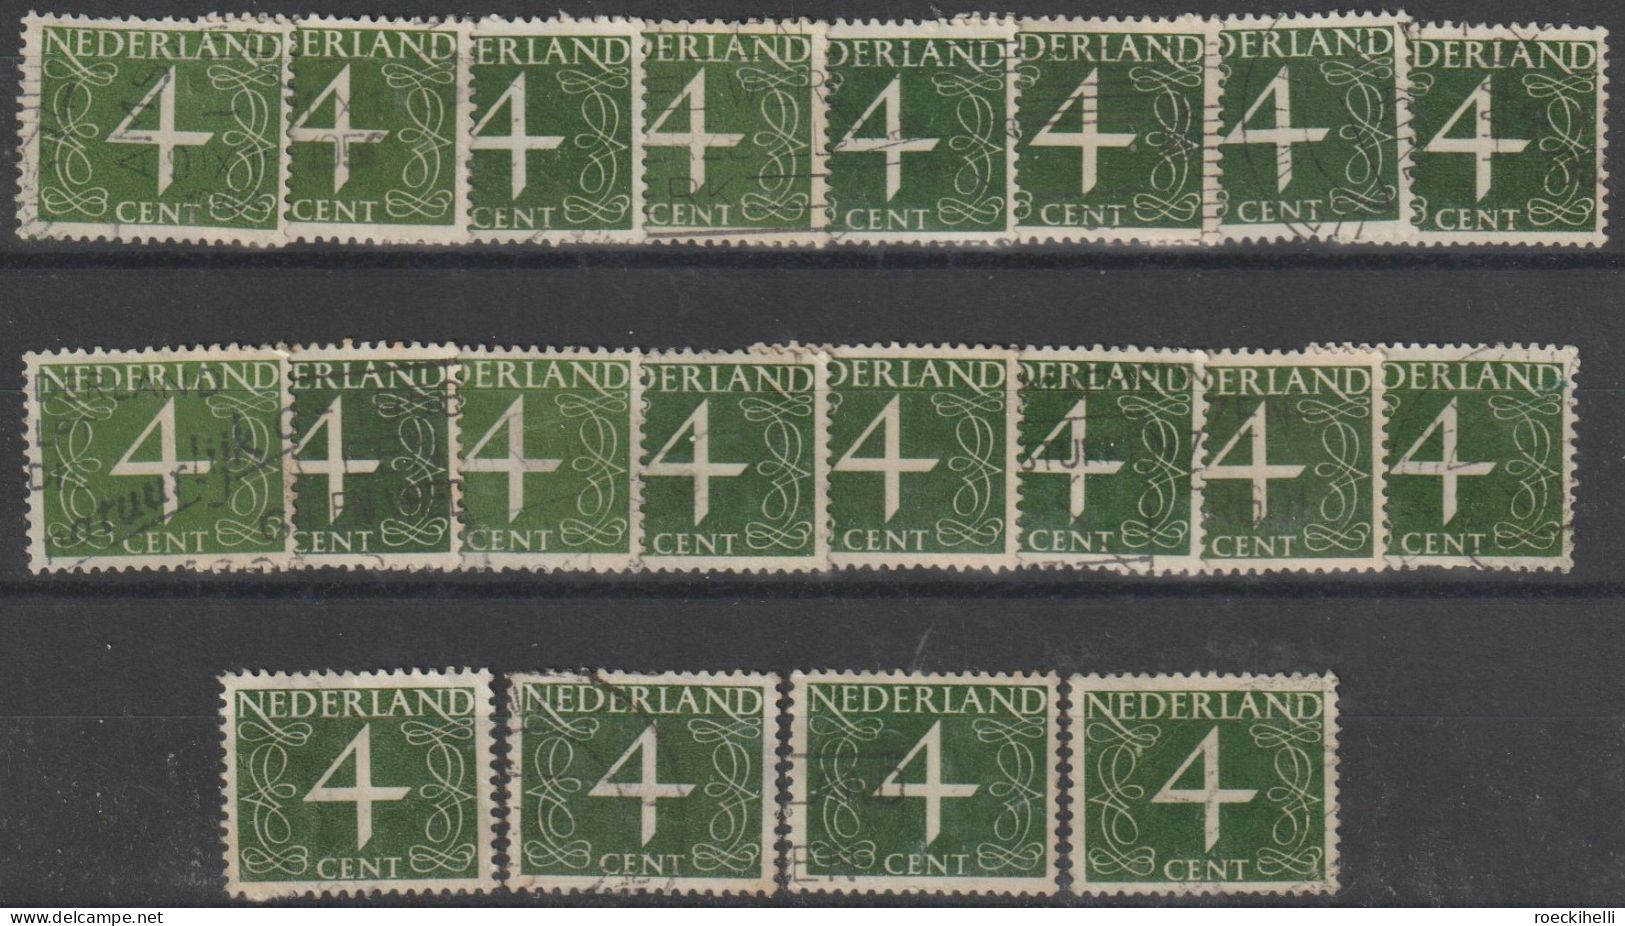 1946 - NIEDERLANDE - FM/DM "Ziffern-Zeichnung" 4 C olivgrün - o gestempelt - s. Scan (471YxAo 01-26 nl)